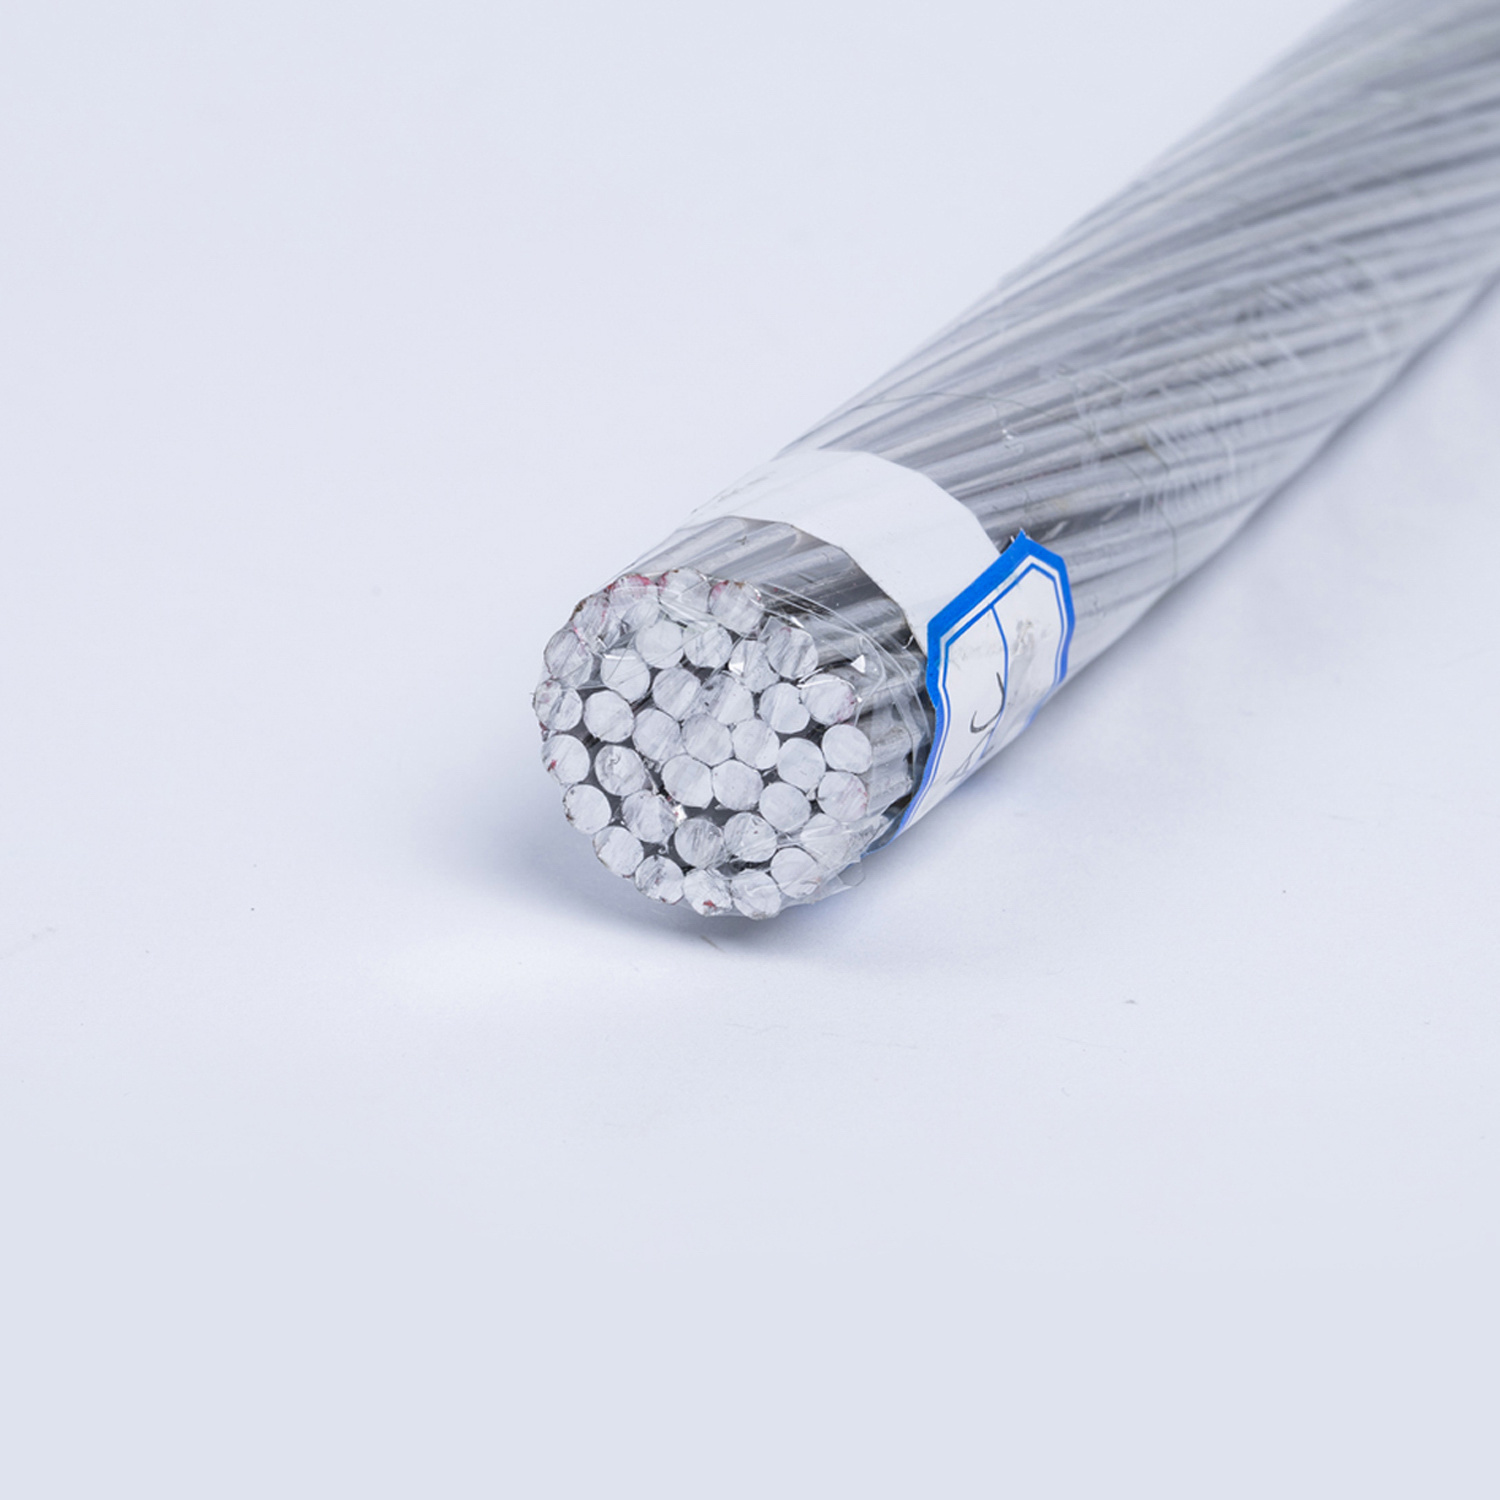 
                Оголенный проводник весь алюминиевый/алюминиевый алюминиевый алюминиевый алюминиевый алюминиевый алюминиевый алюминиевый алюминиевый алюминиевый подвесной кабель
            